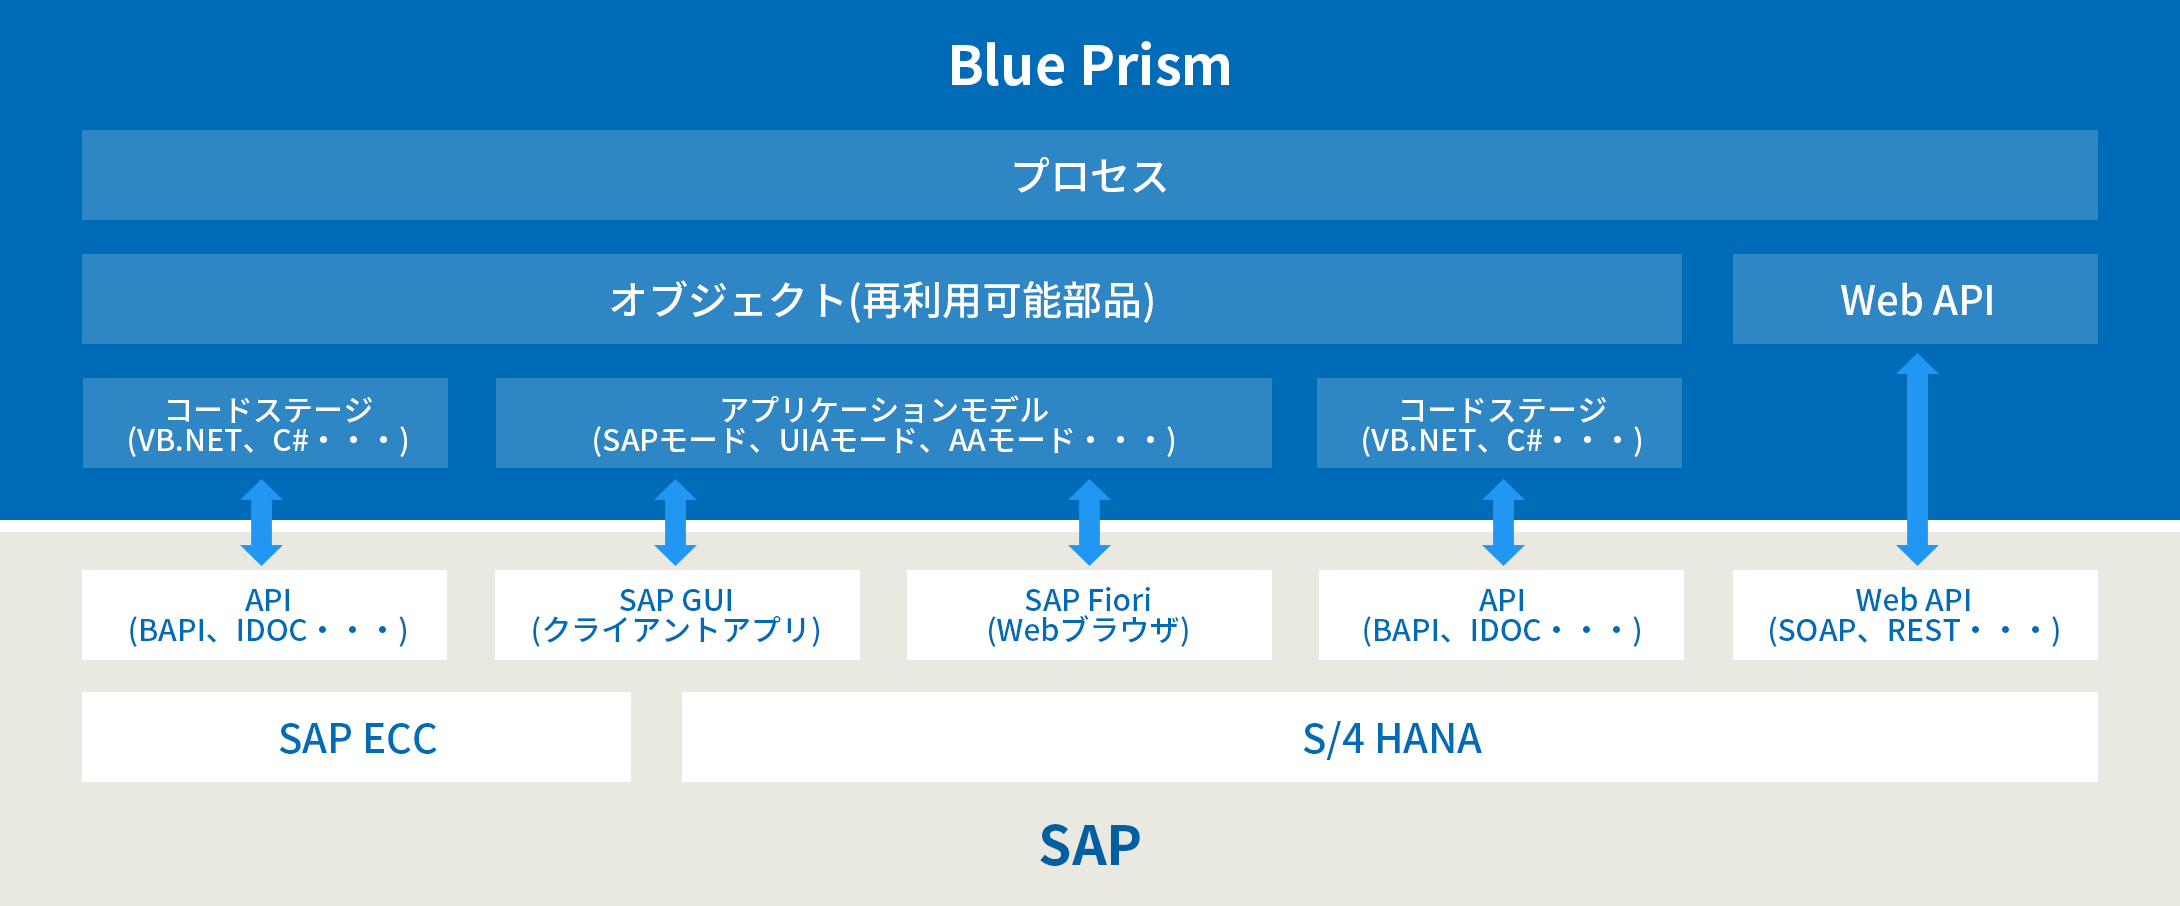 SAP操作における全ての方式に対して、Blue Prismならではのアプローチが可能。